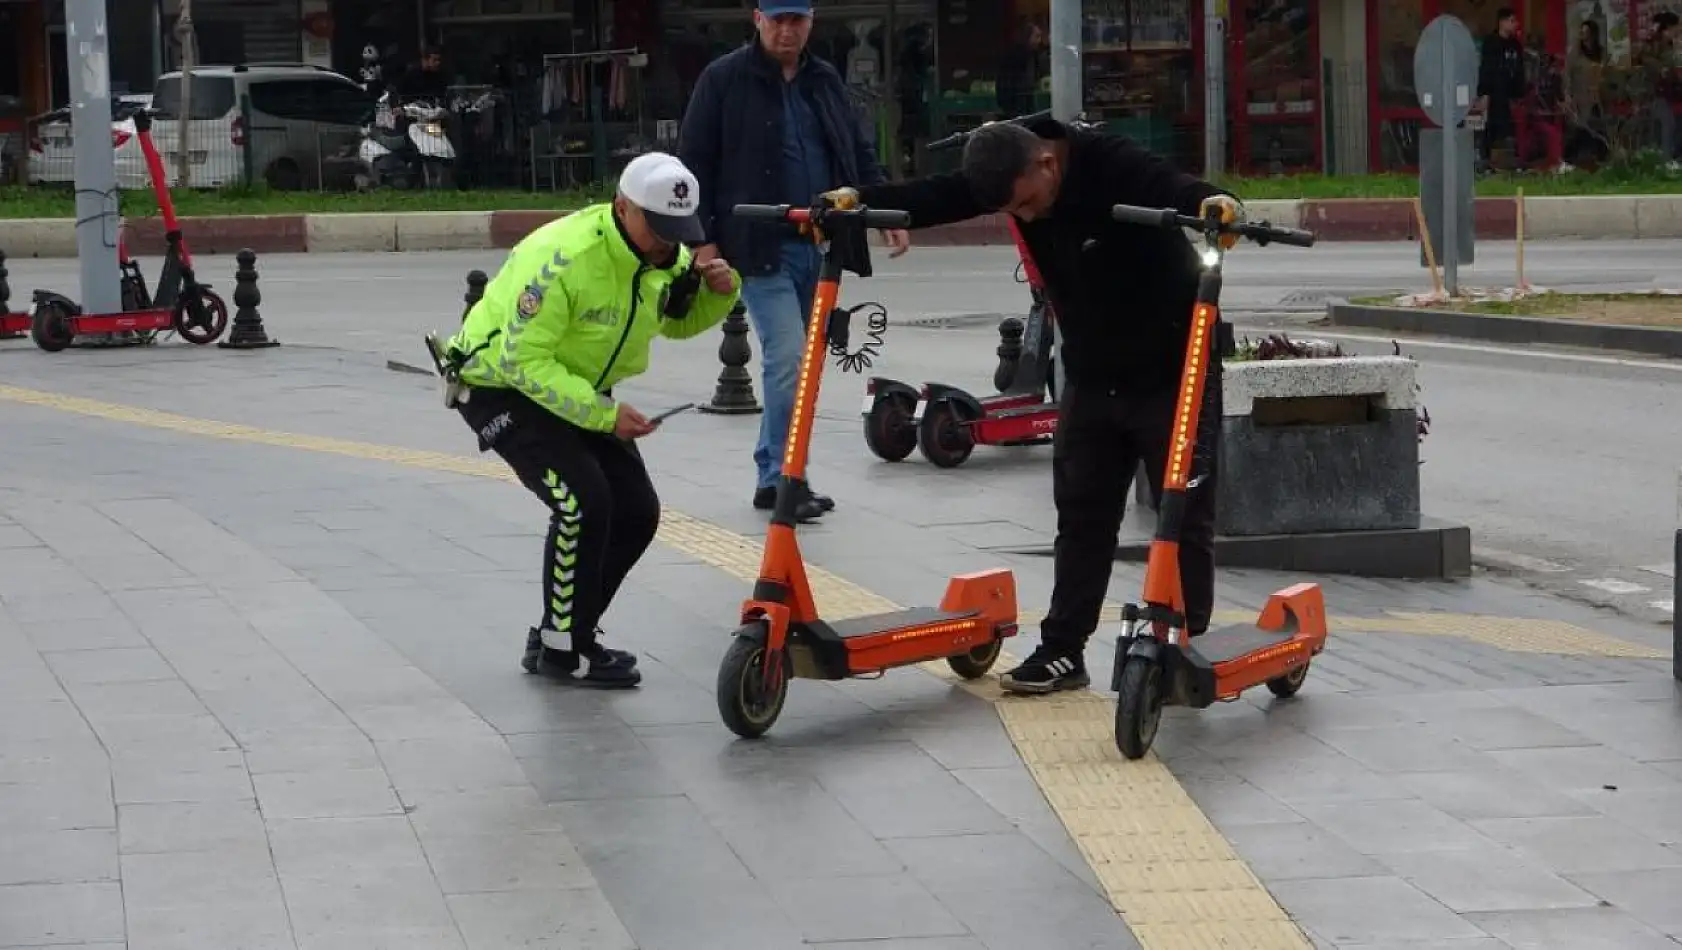 Yol ortasına bırakılan scooterlar toplandı, 690 TL ceza uygulandı